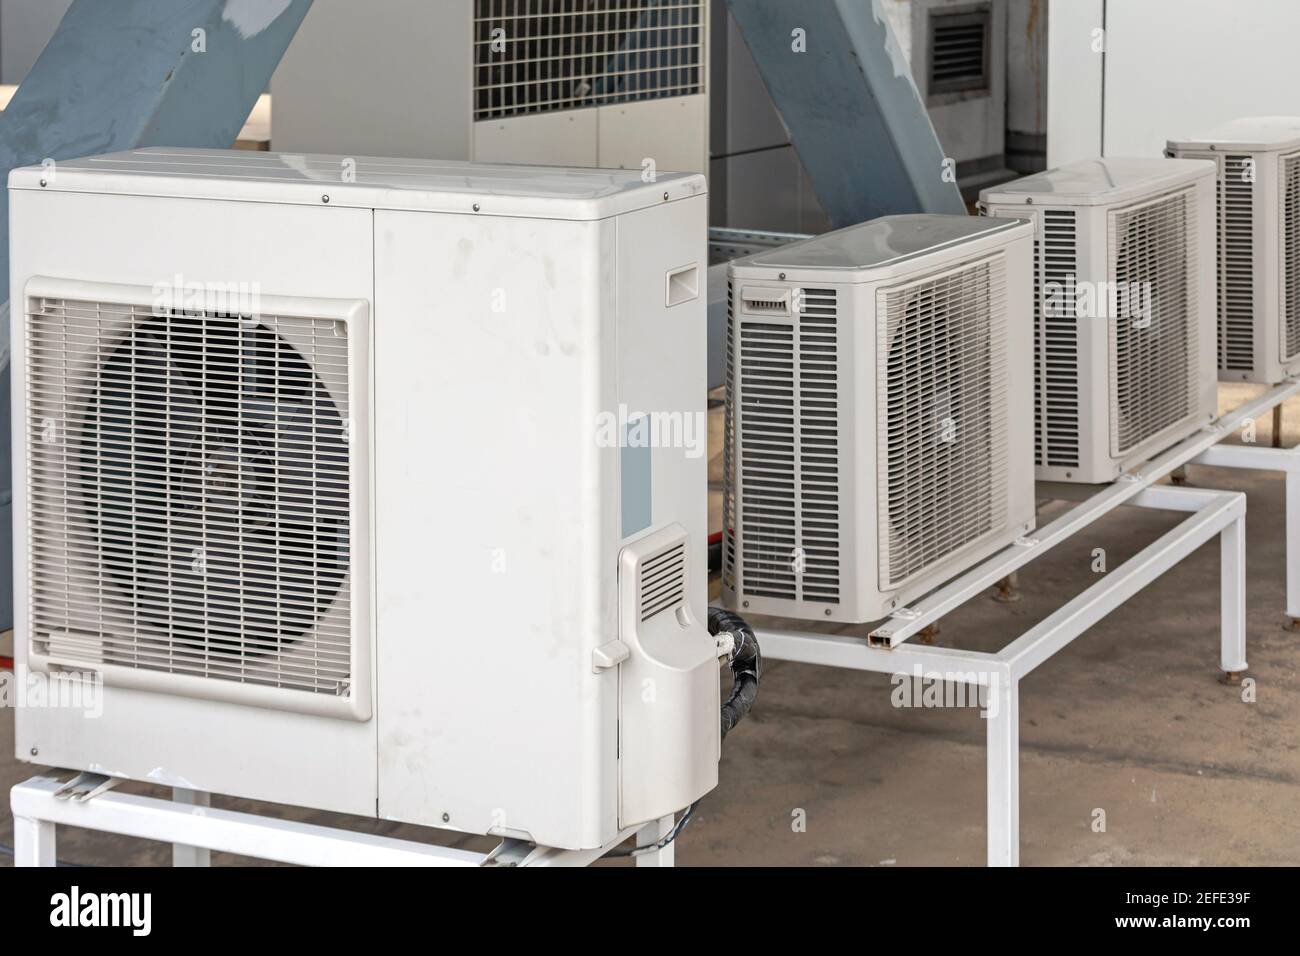 Condizionatori d'aria, unità HVAC nella parte superiore dell'edificio Foto Stock